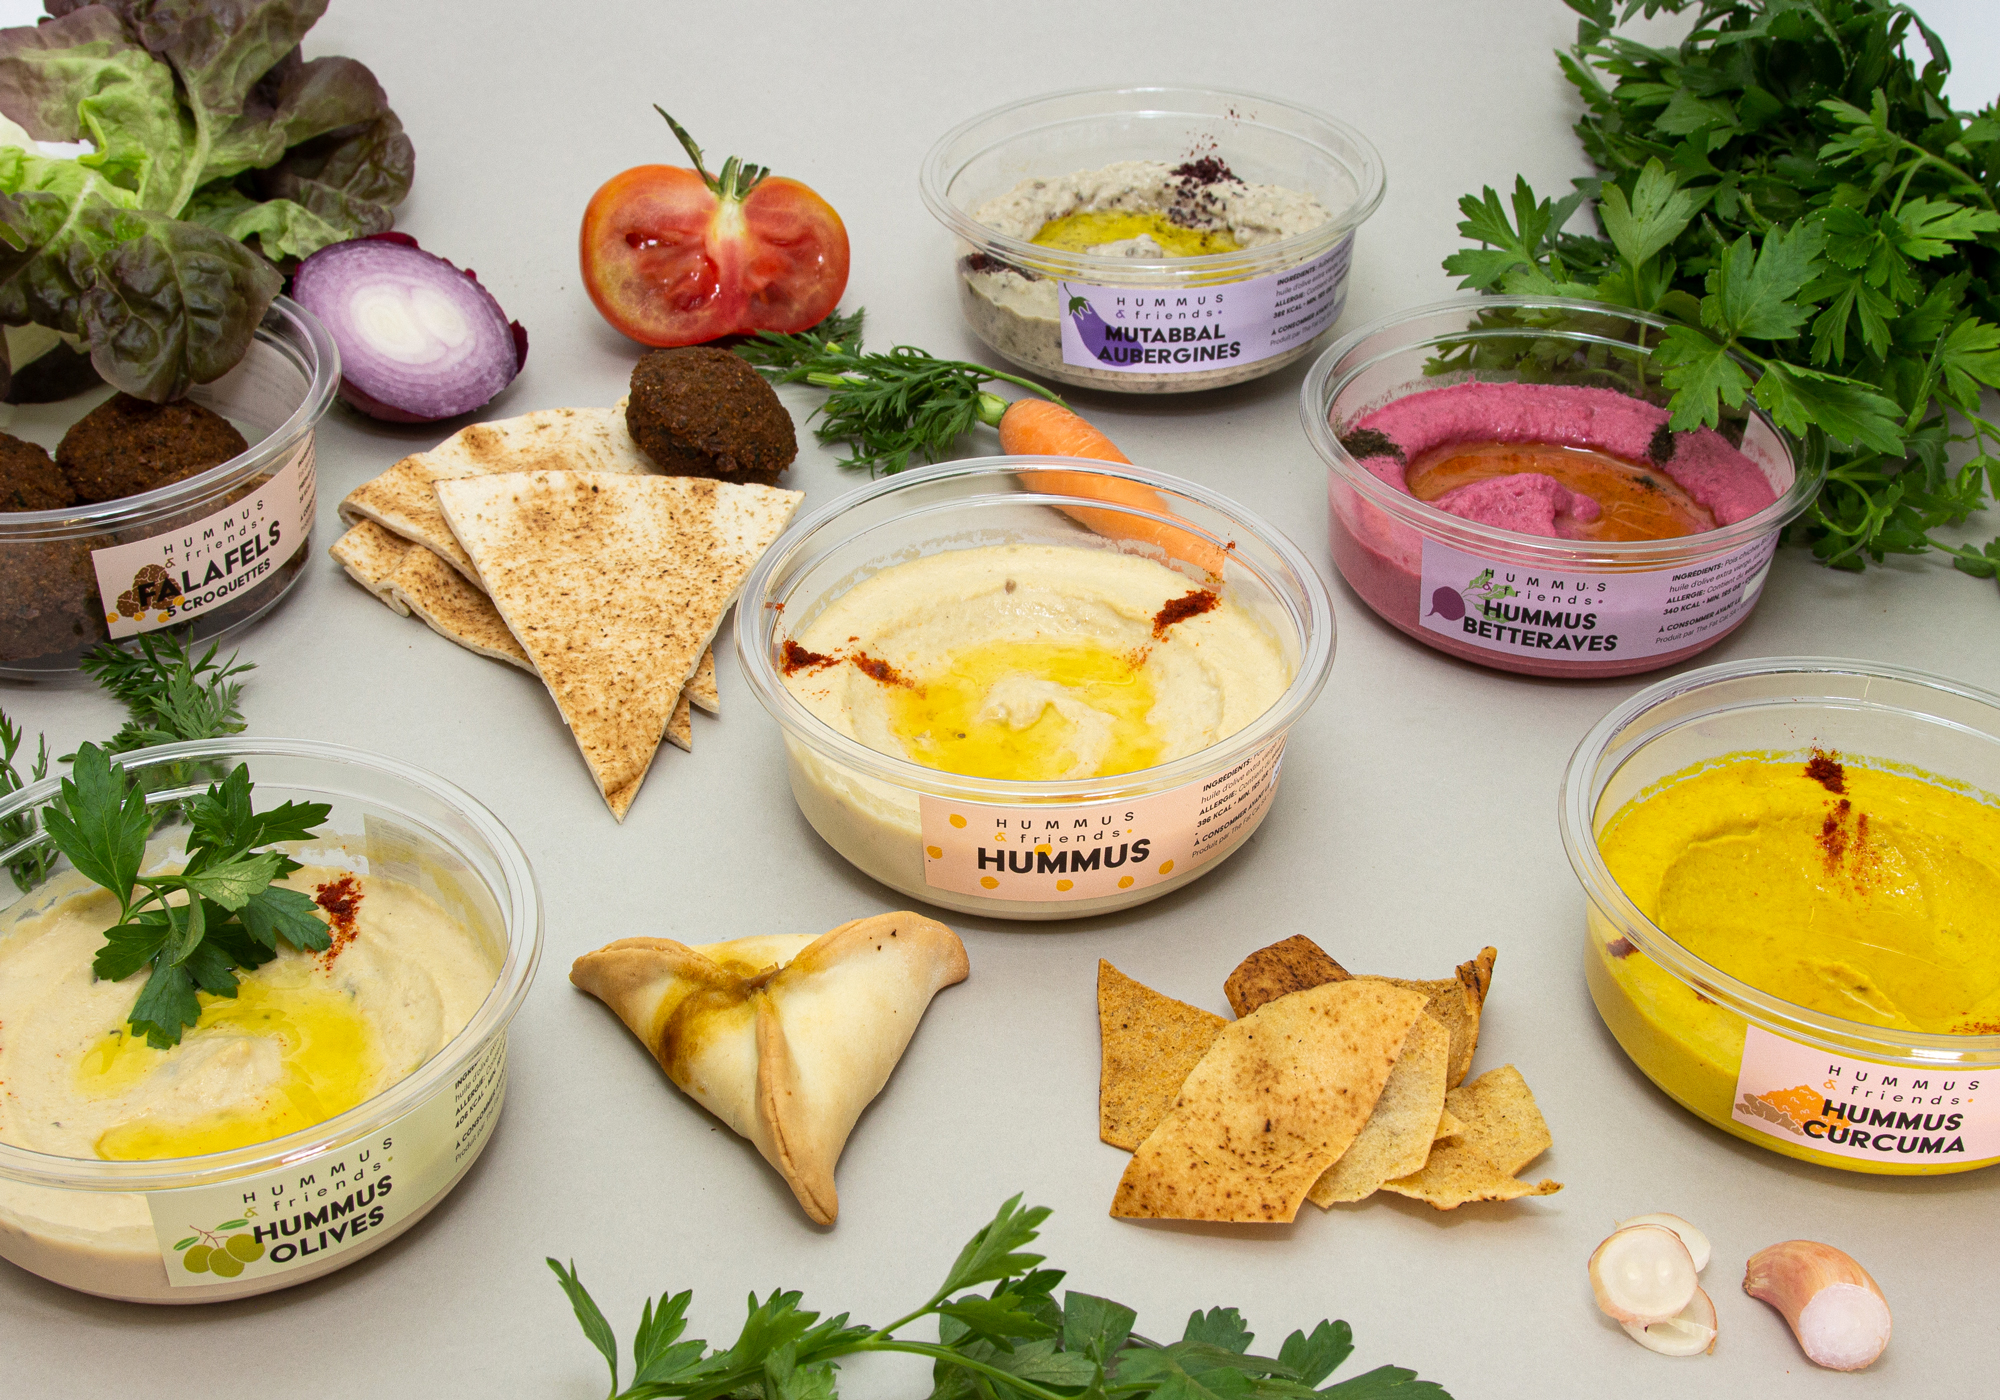 Hummus conçu par Hummus&Friends - Spécialités libanaises